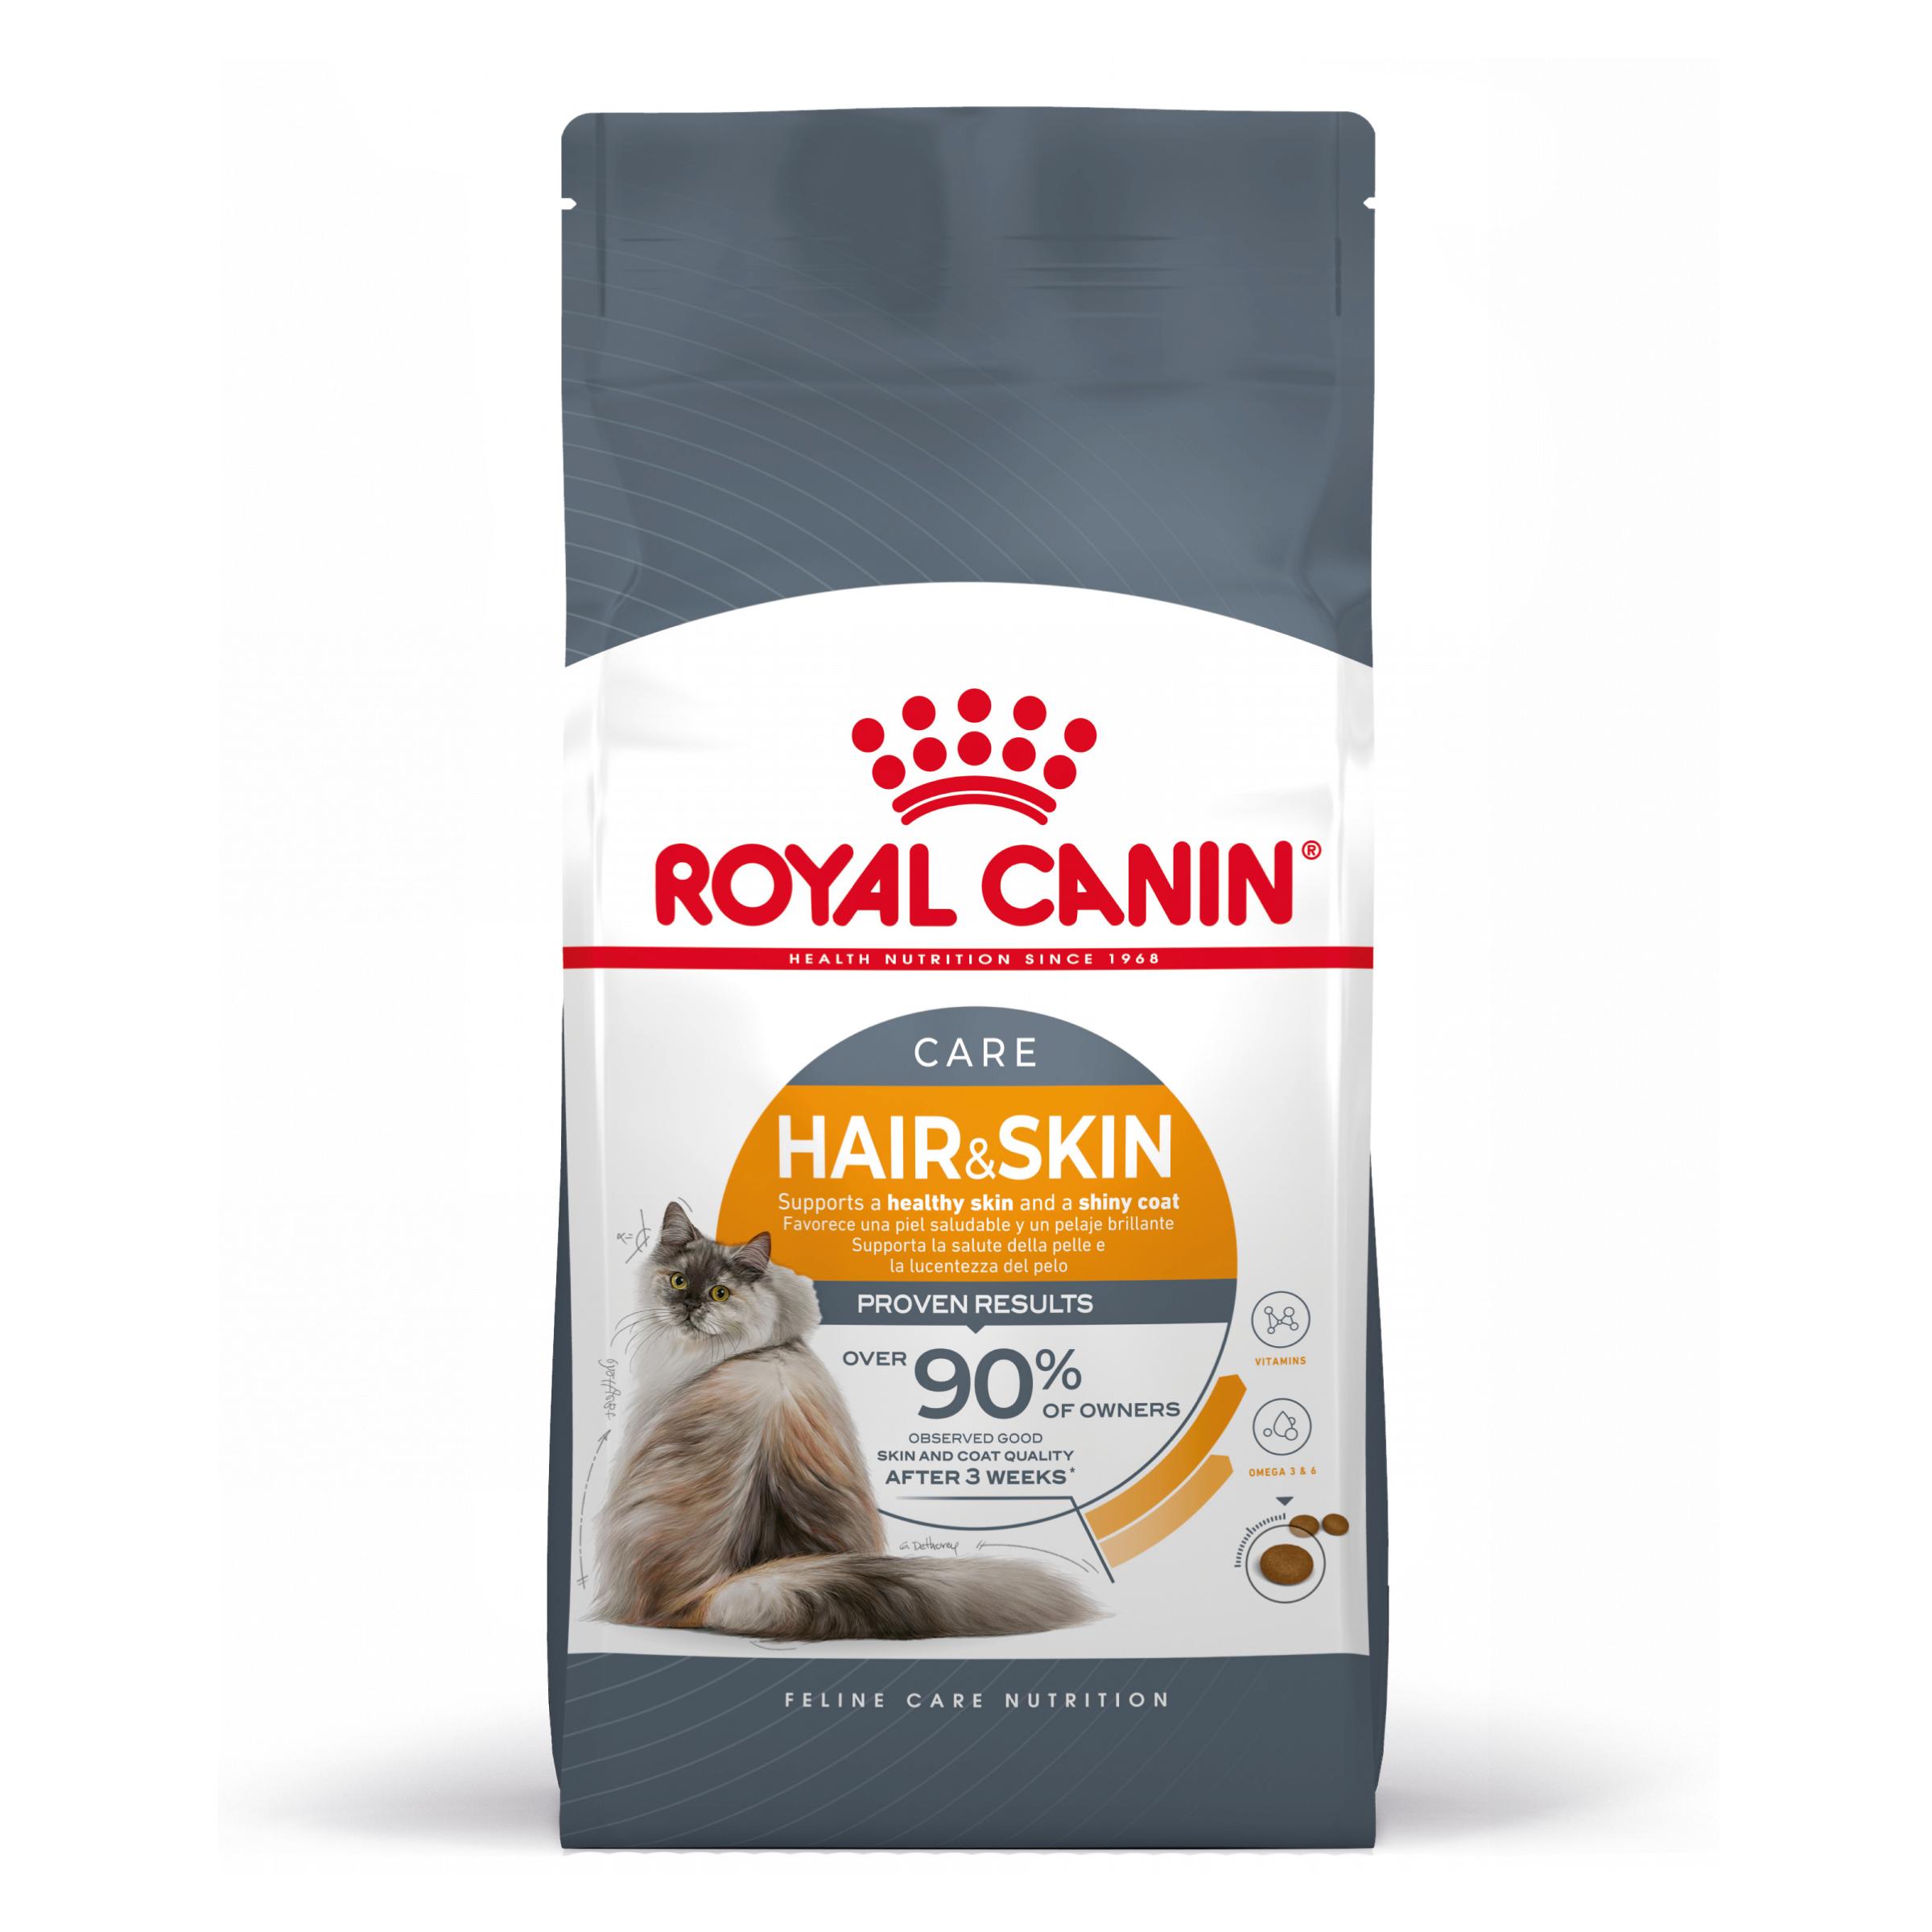 Royal Canin Hair & Skin - Aliment pour chats adultes. - Recommandé pour soutenir la santé du pelage et de la peau - 2kg